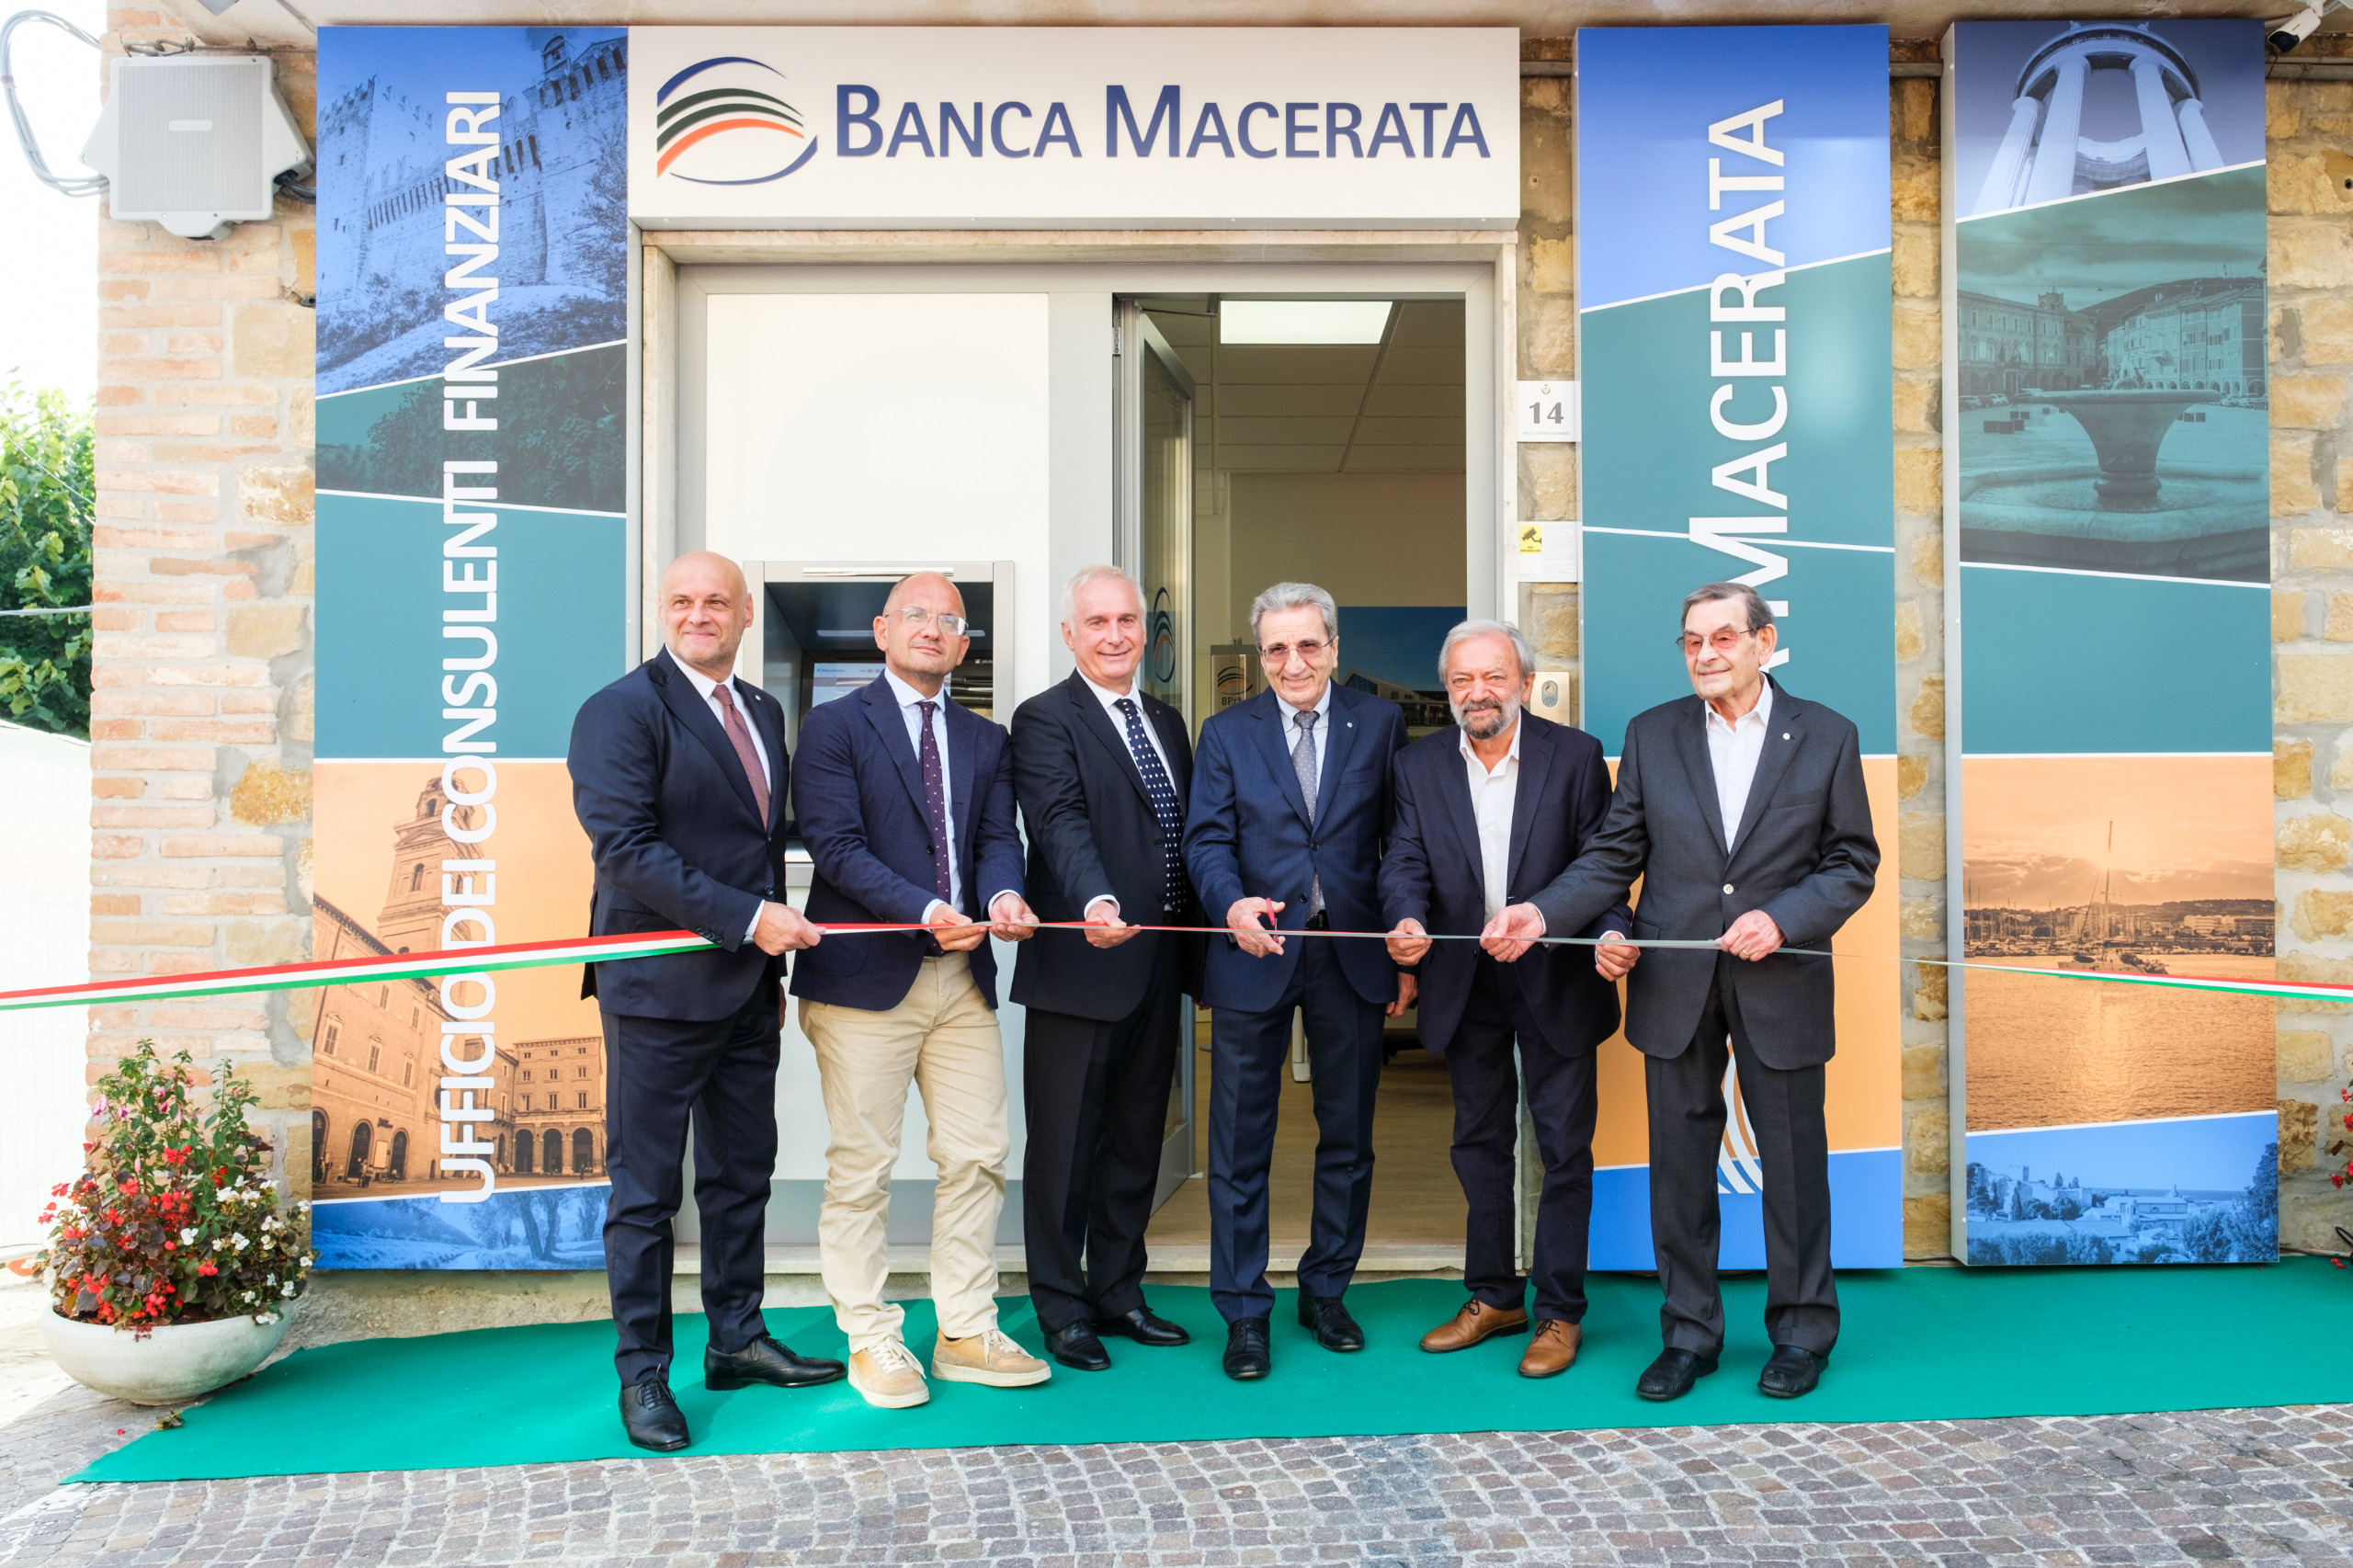 Continua lo sviluppo di Banca Macerata: nuova apertura a Gualdo | Banca Macerata 7